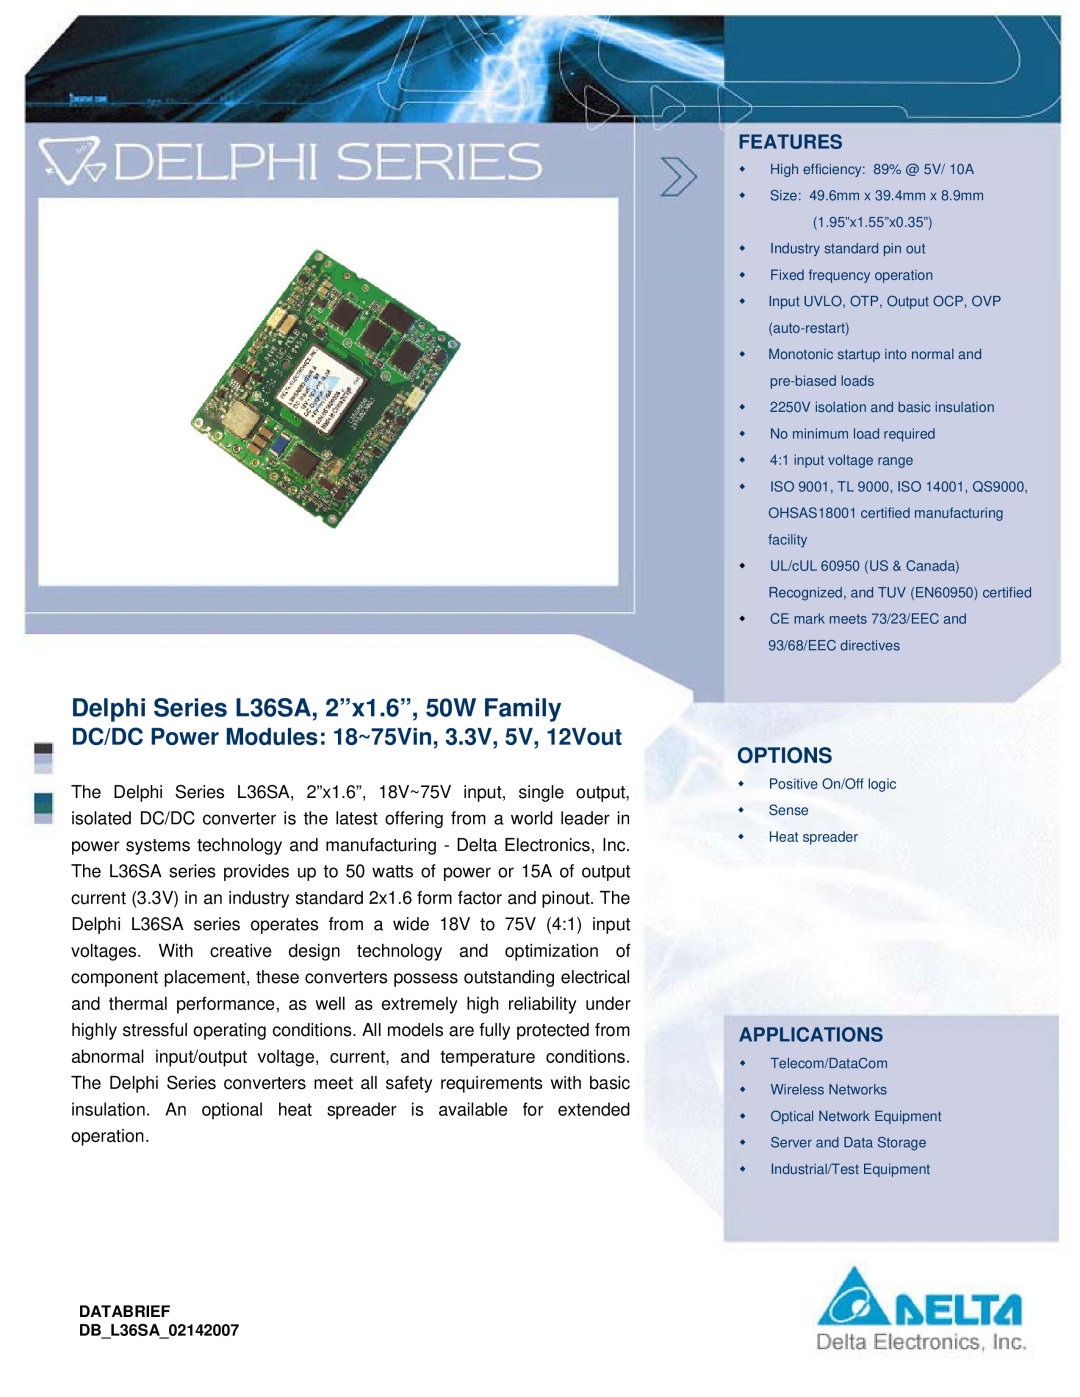 Delta Electronics manual Features, Applications, Delphi Series L36SA, 2”x1.6”, 50W Family, Options 